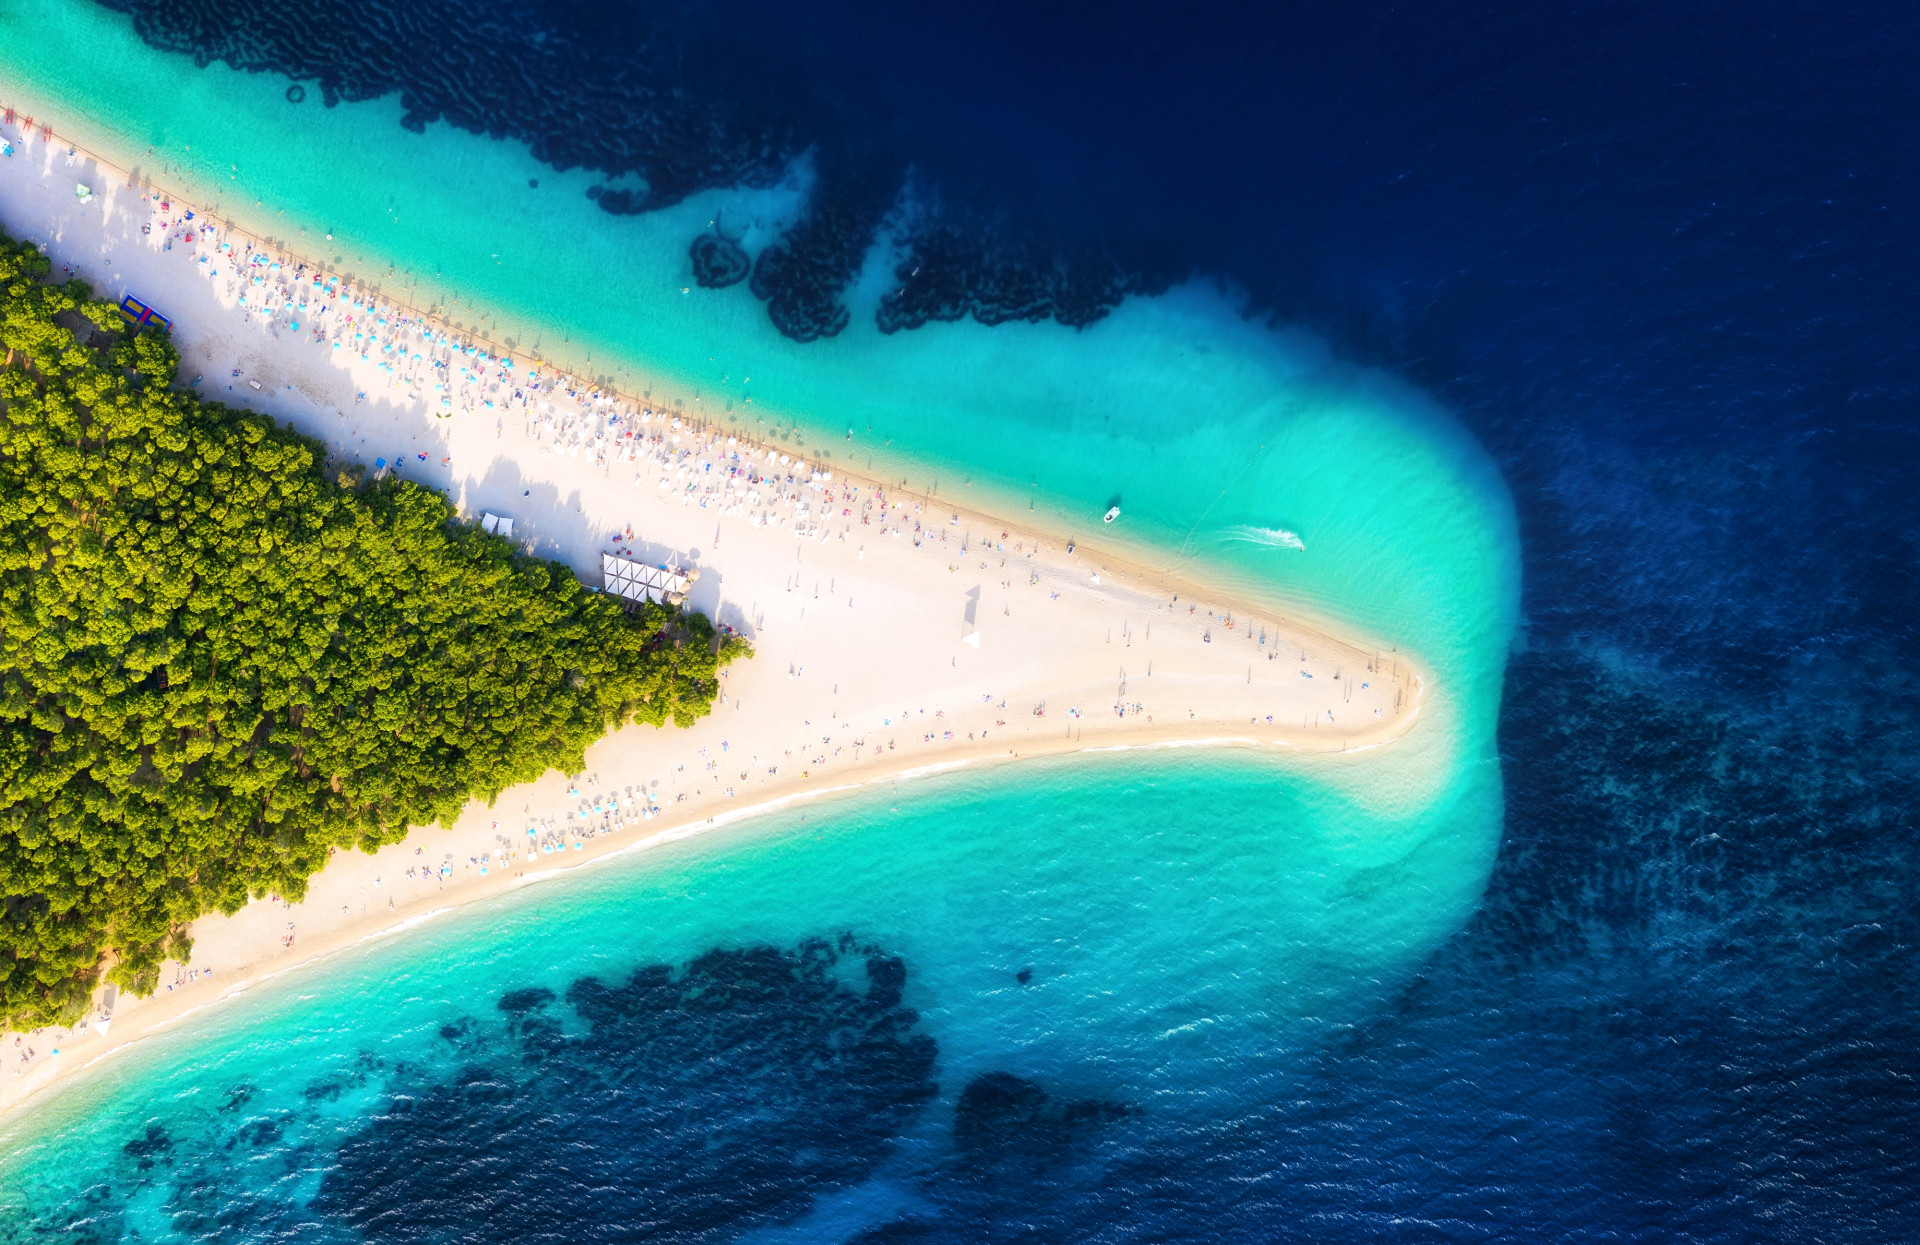 Najljepše plaže u Hrvatskoj